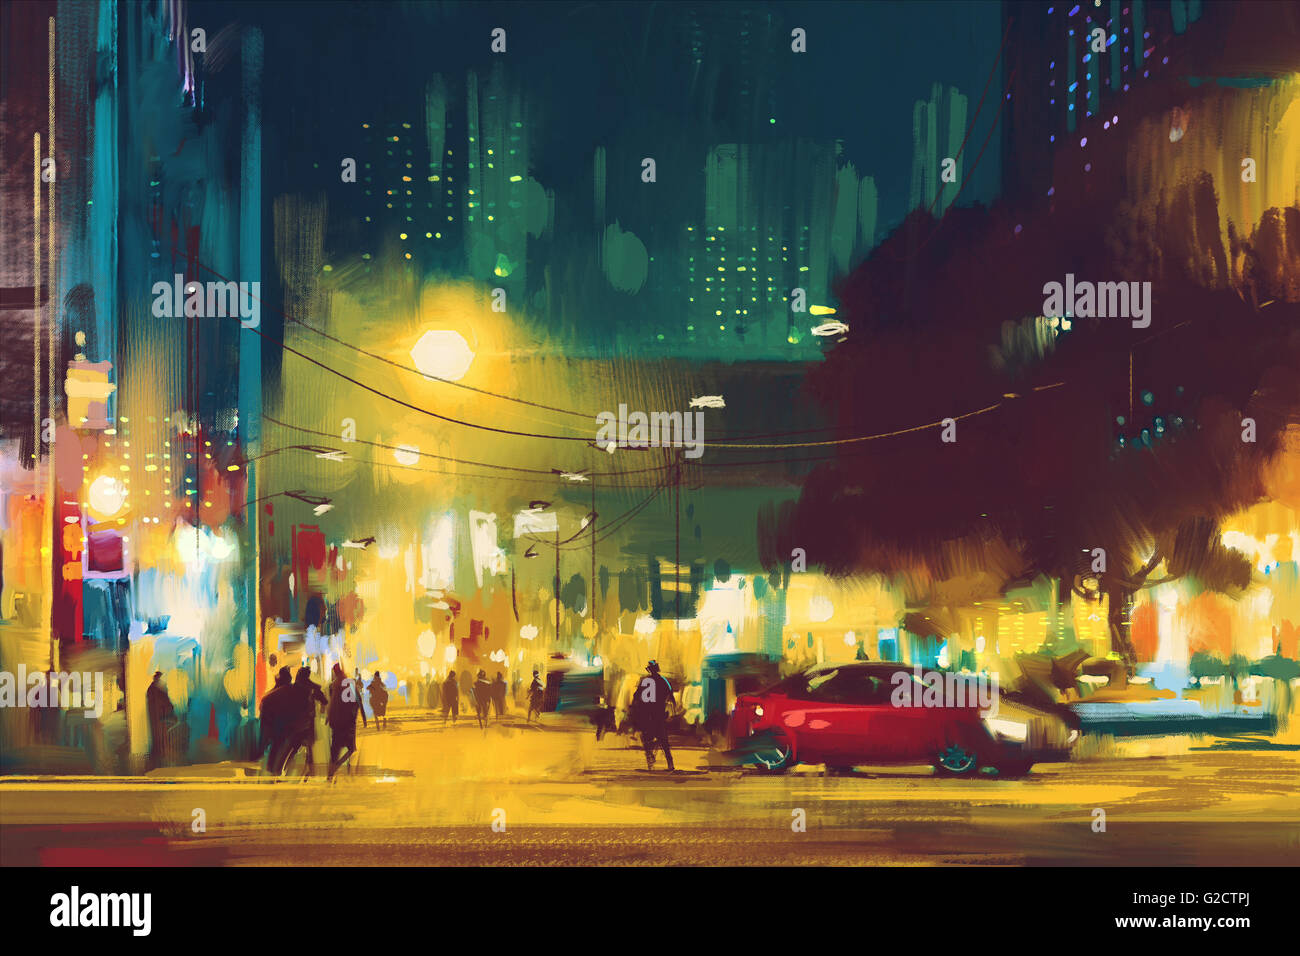 Nachtaufnahme des Stadtbildes mit Beleuchtung, Illustrationskunst Stockfoto